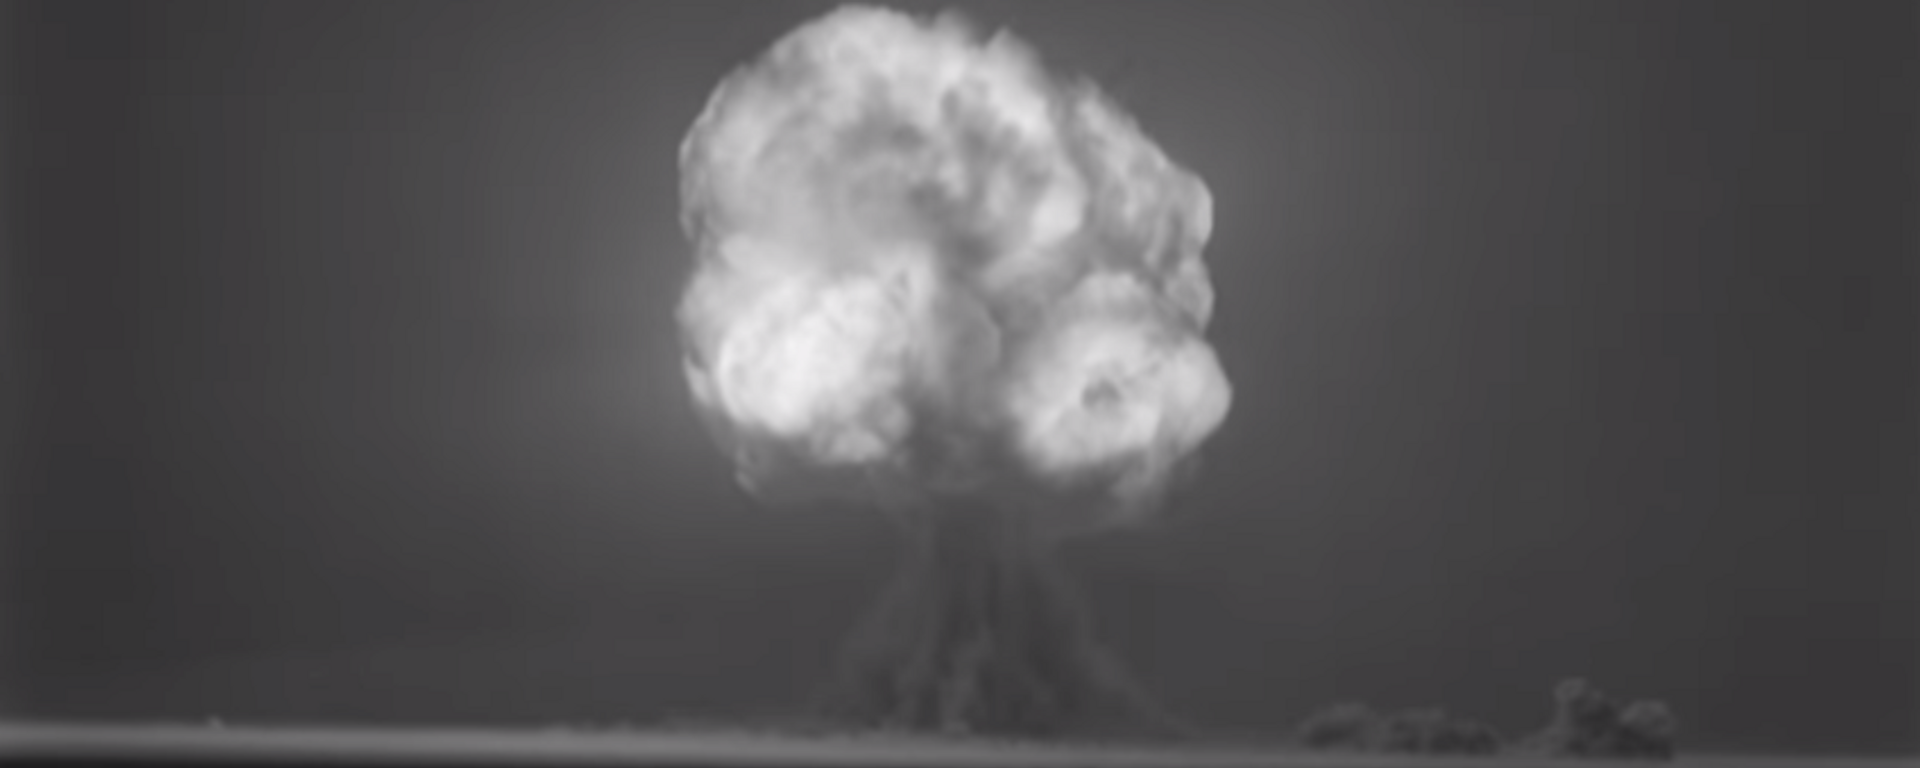 Explosão da Trinity, a primeira bomba nuclear (foto de arquivo) - Sputnik Brasil, 1920, 29.08.2019